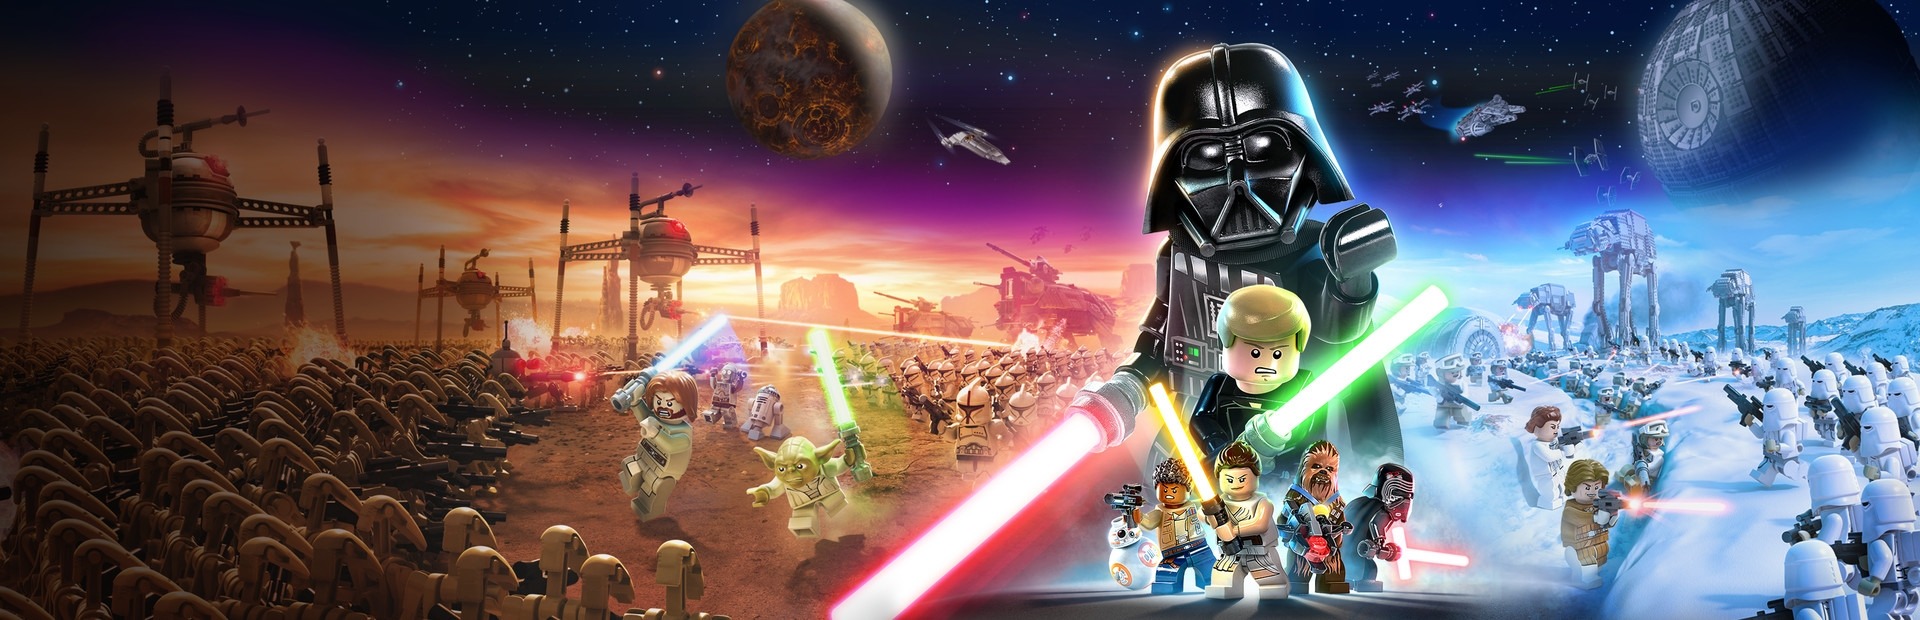 Lego star wars the complete saga купить ключ стим фото 72